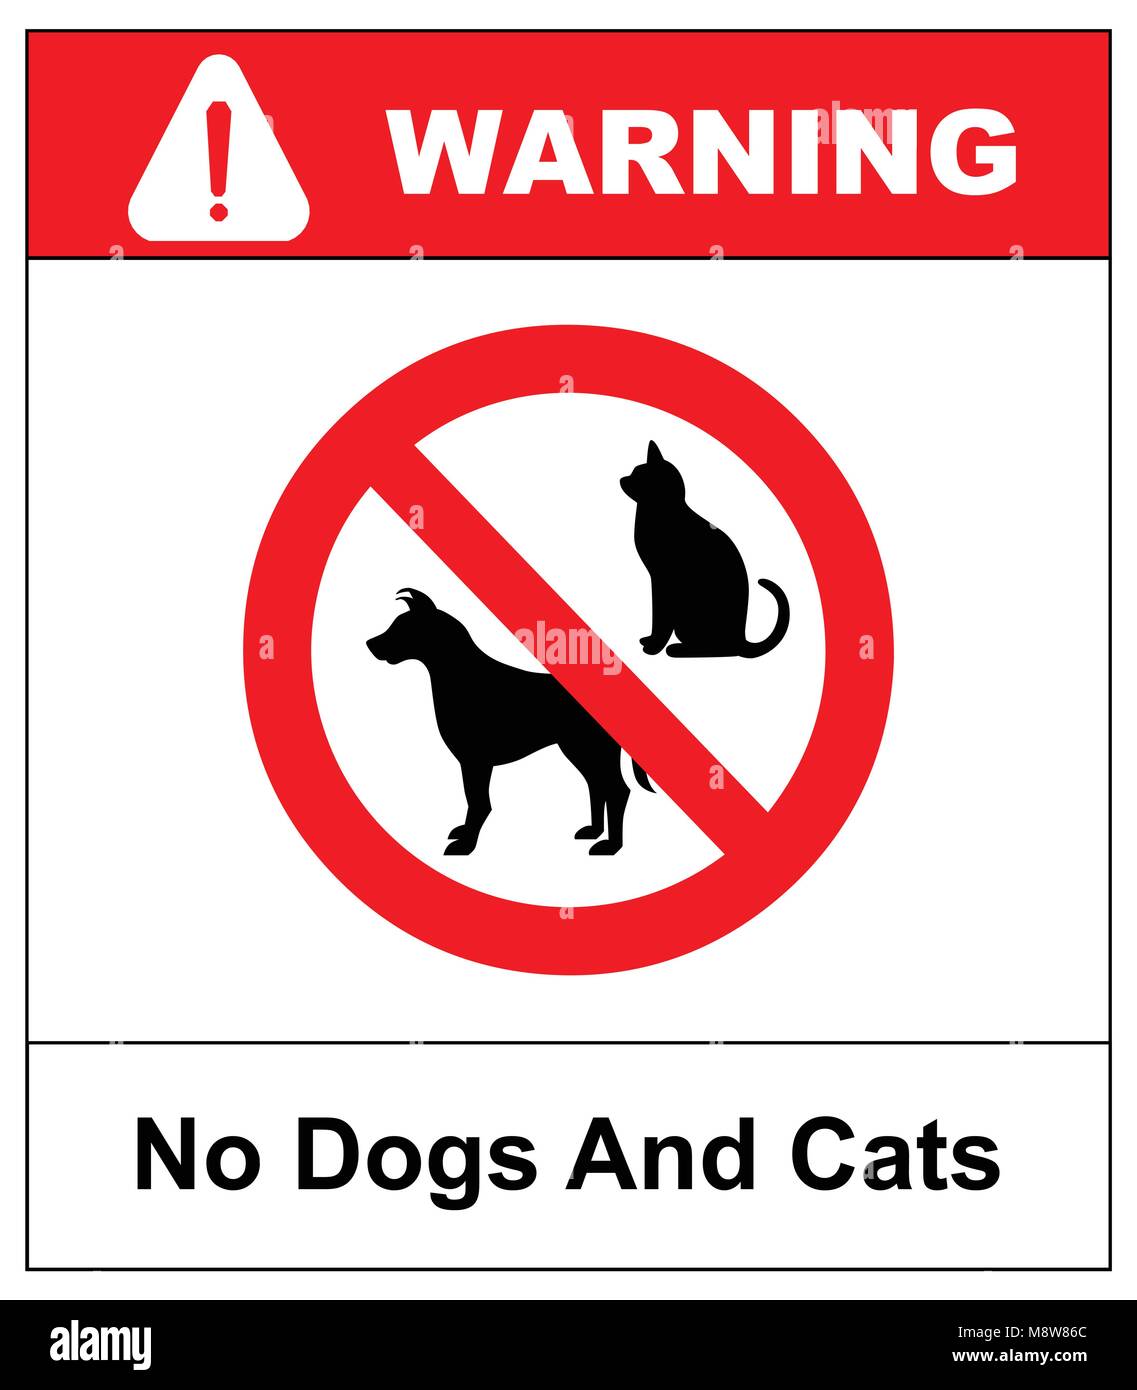 Keine Hunde und Katzen rote Zeichen. Keine Haustiere erlaubt. Rund, Rot keine  Haustiere Vektor isoliert Abbildung. Warnung Verbotssymbol  Stock-Vektorgrafik - Alamy